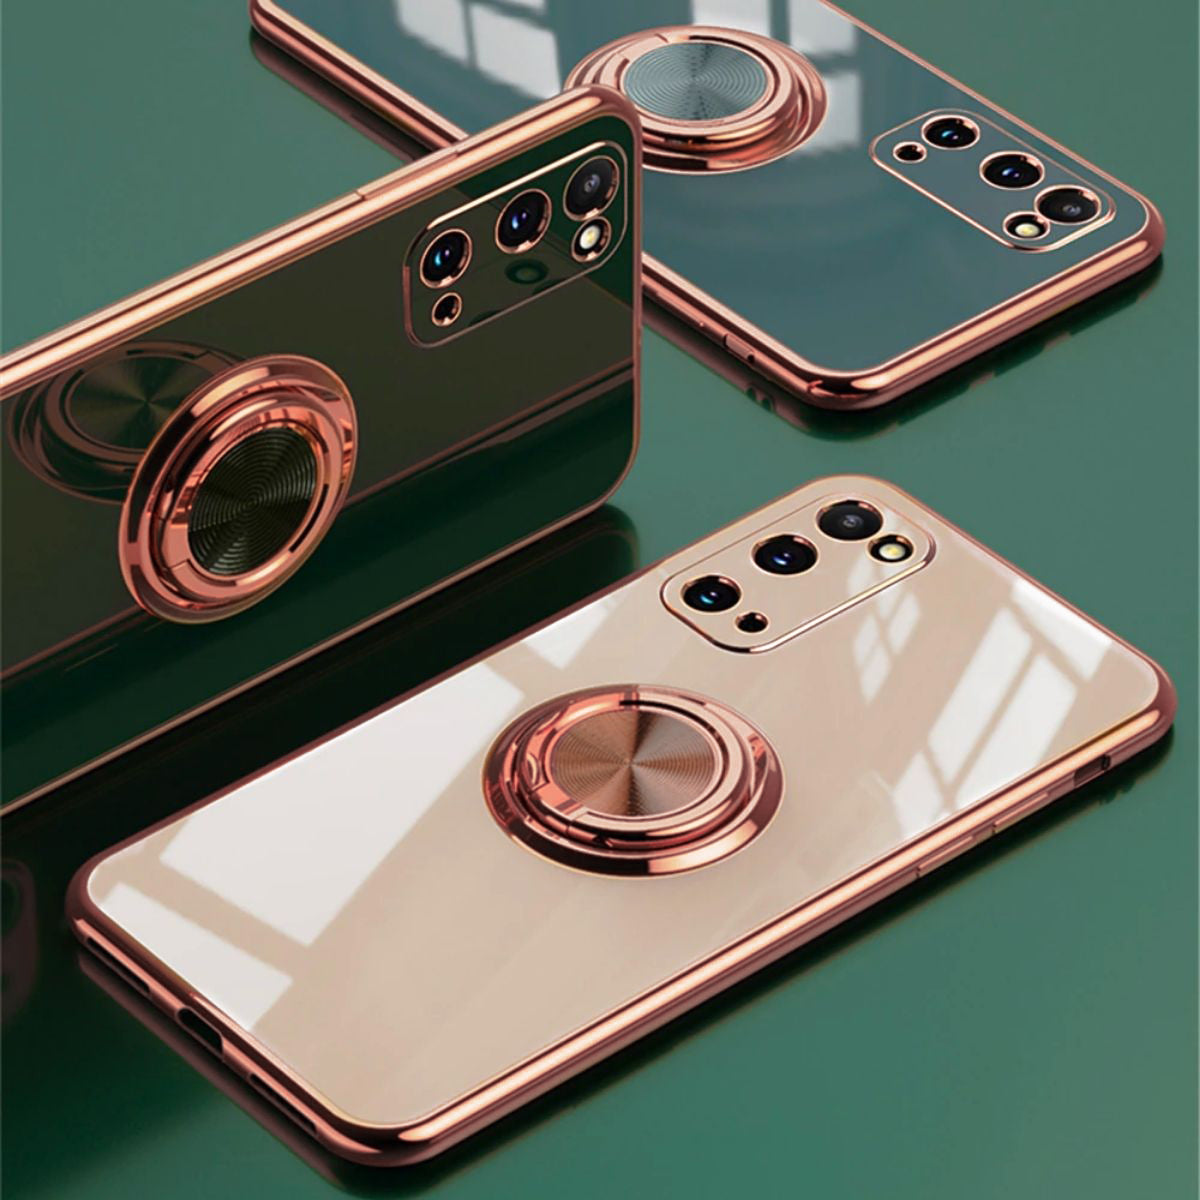 LUXE - The Elegant Samsung Case - Dark Green